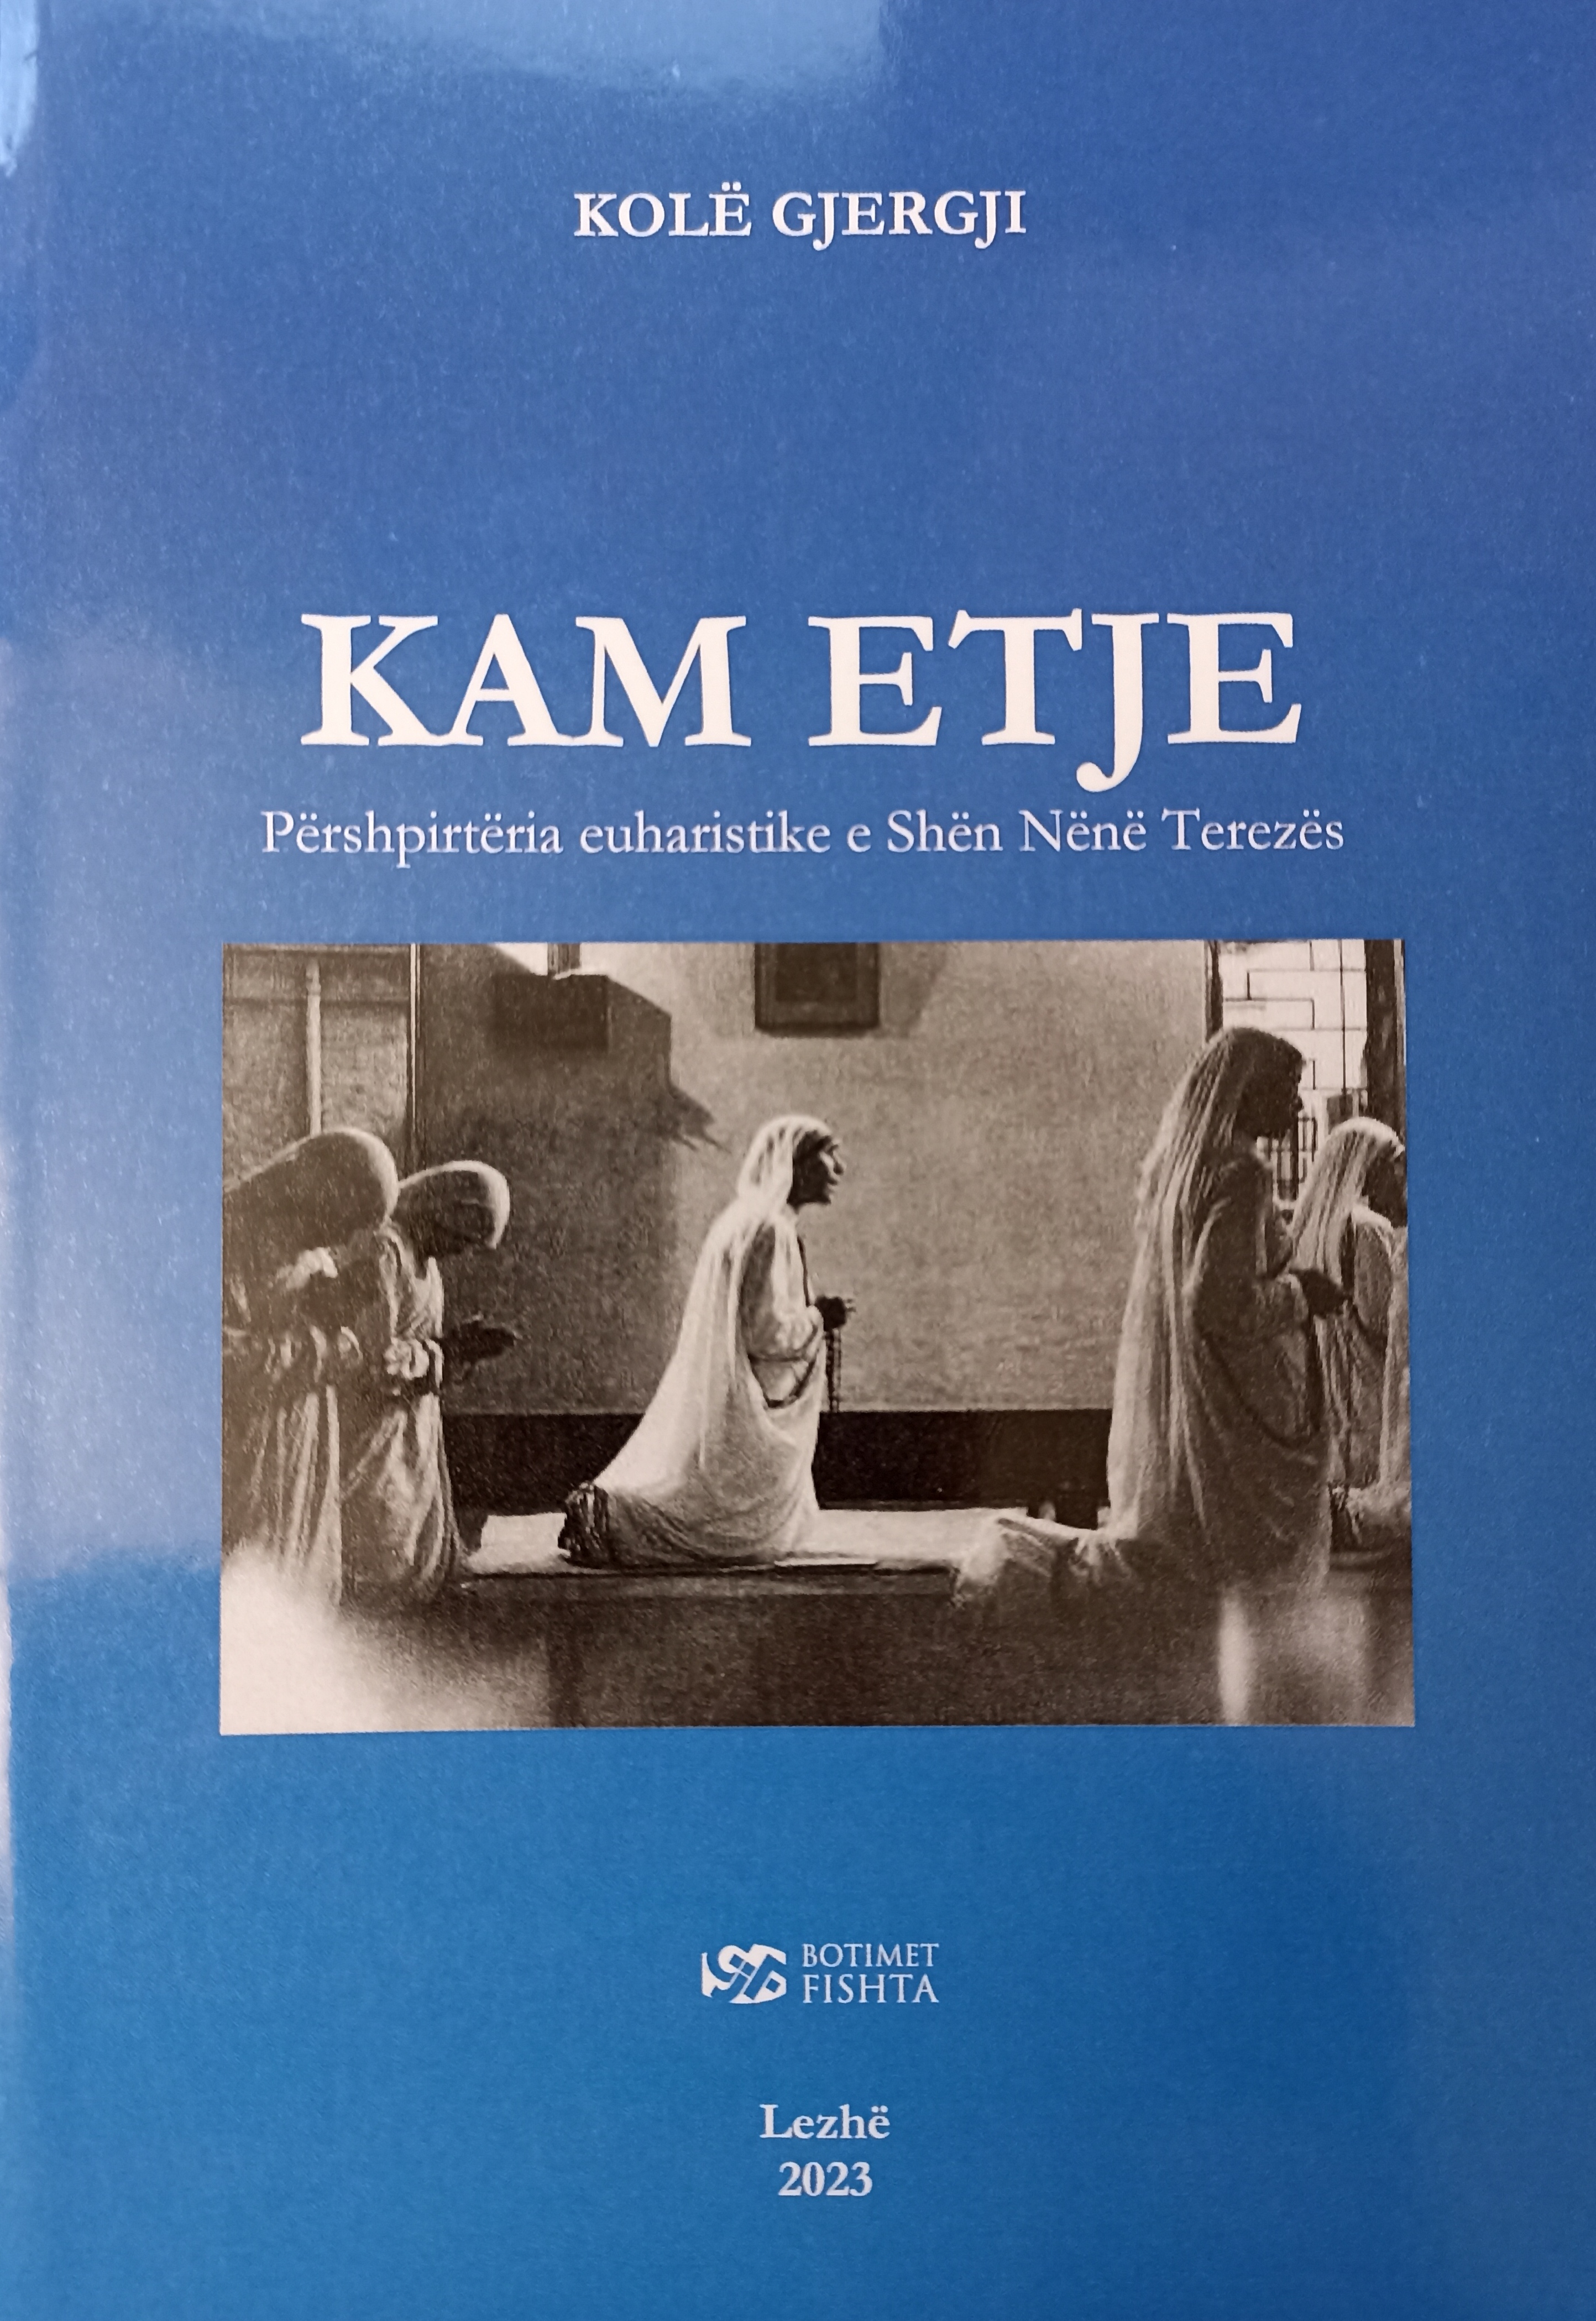 2023 von Kolë Gjergji verfasst: das Buch «Kam Etje» über die eucharistische Spiritualität von Mutter Teresa 